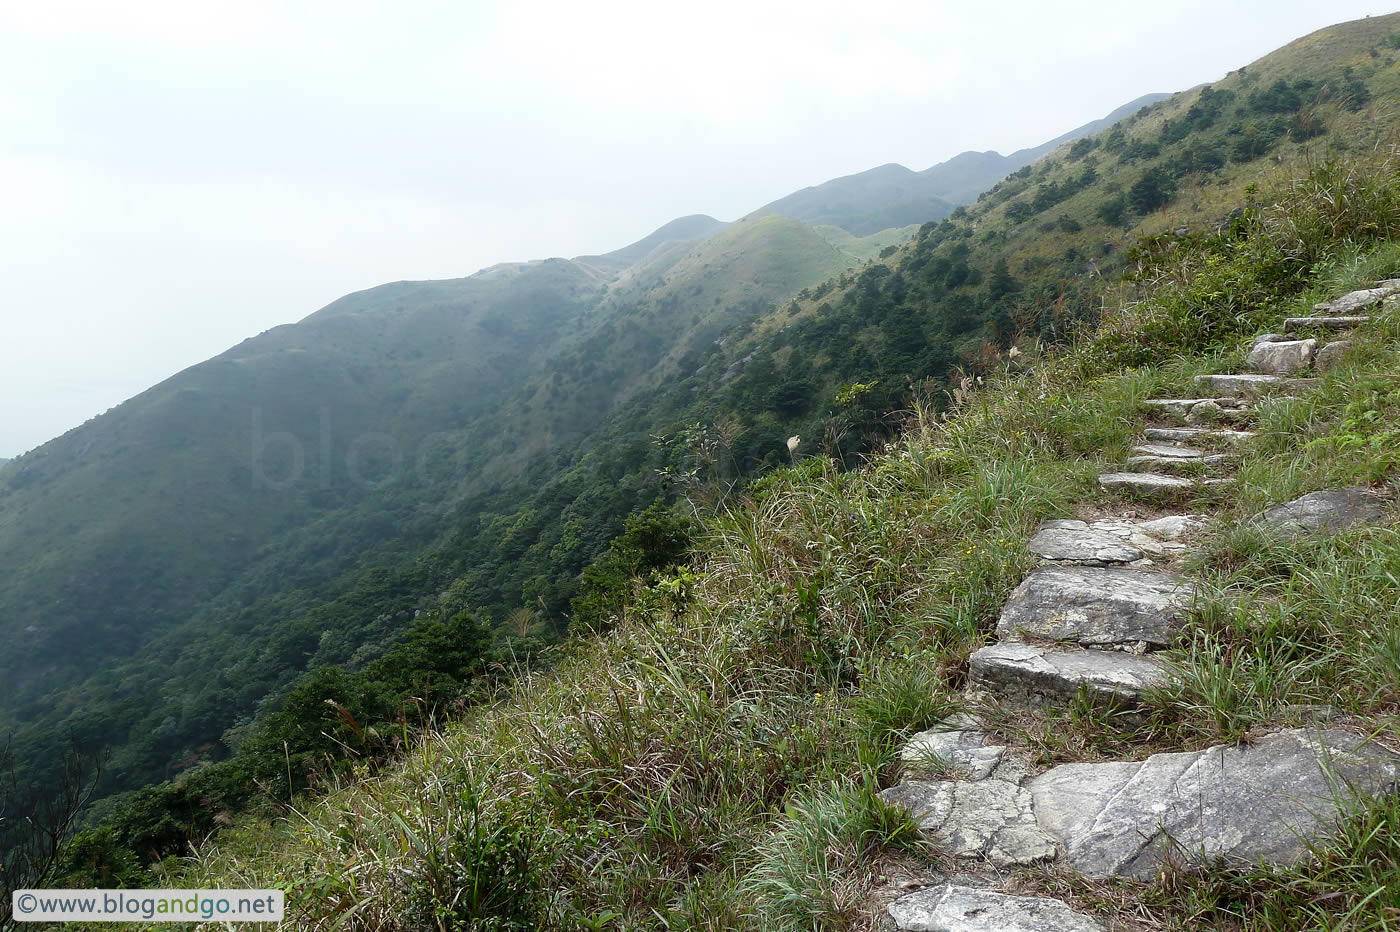 Lantau Trail - More steps